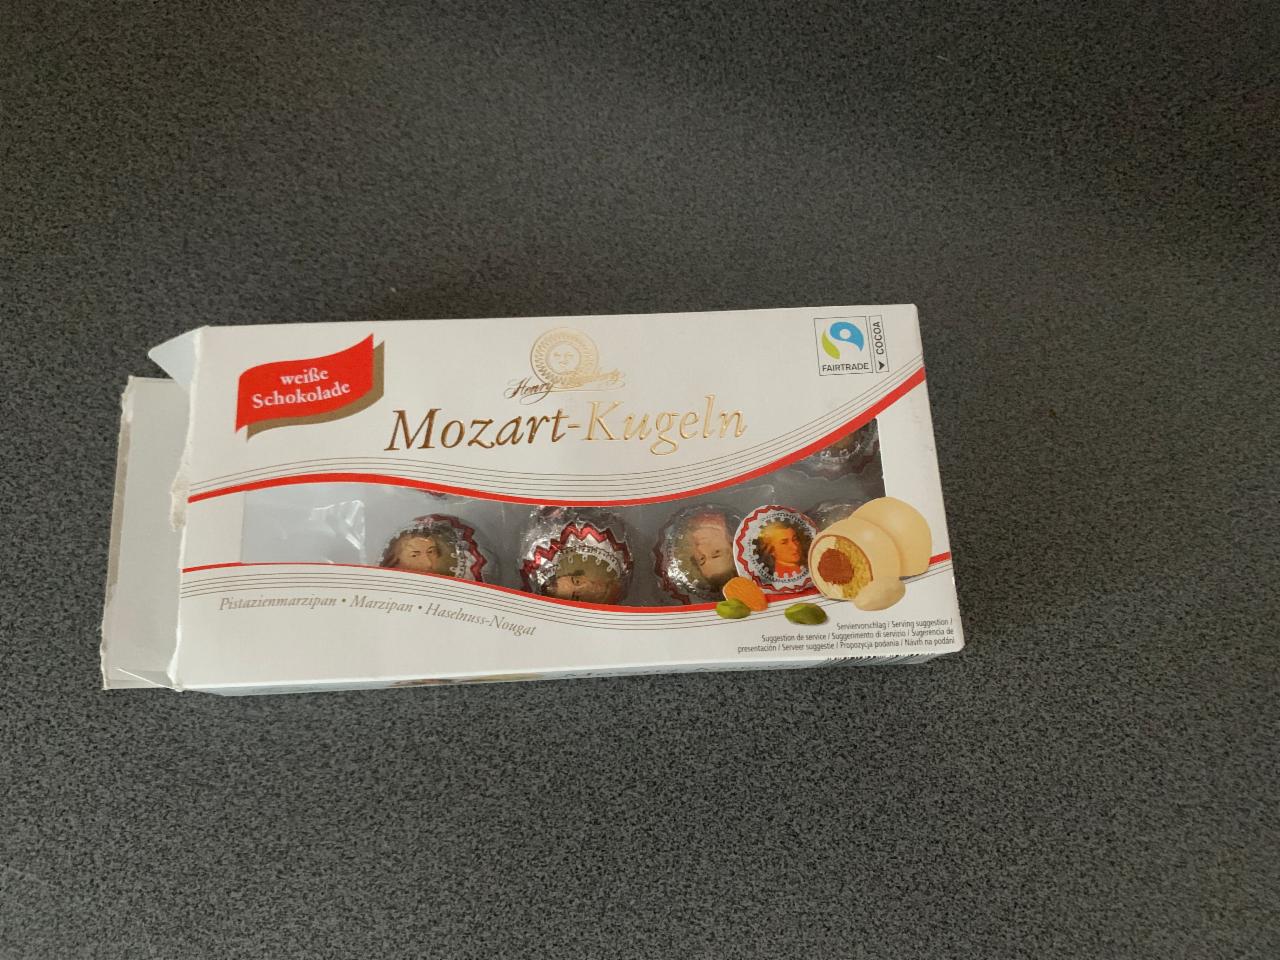 Fotografie - Mozart -kugeln pistacia